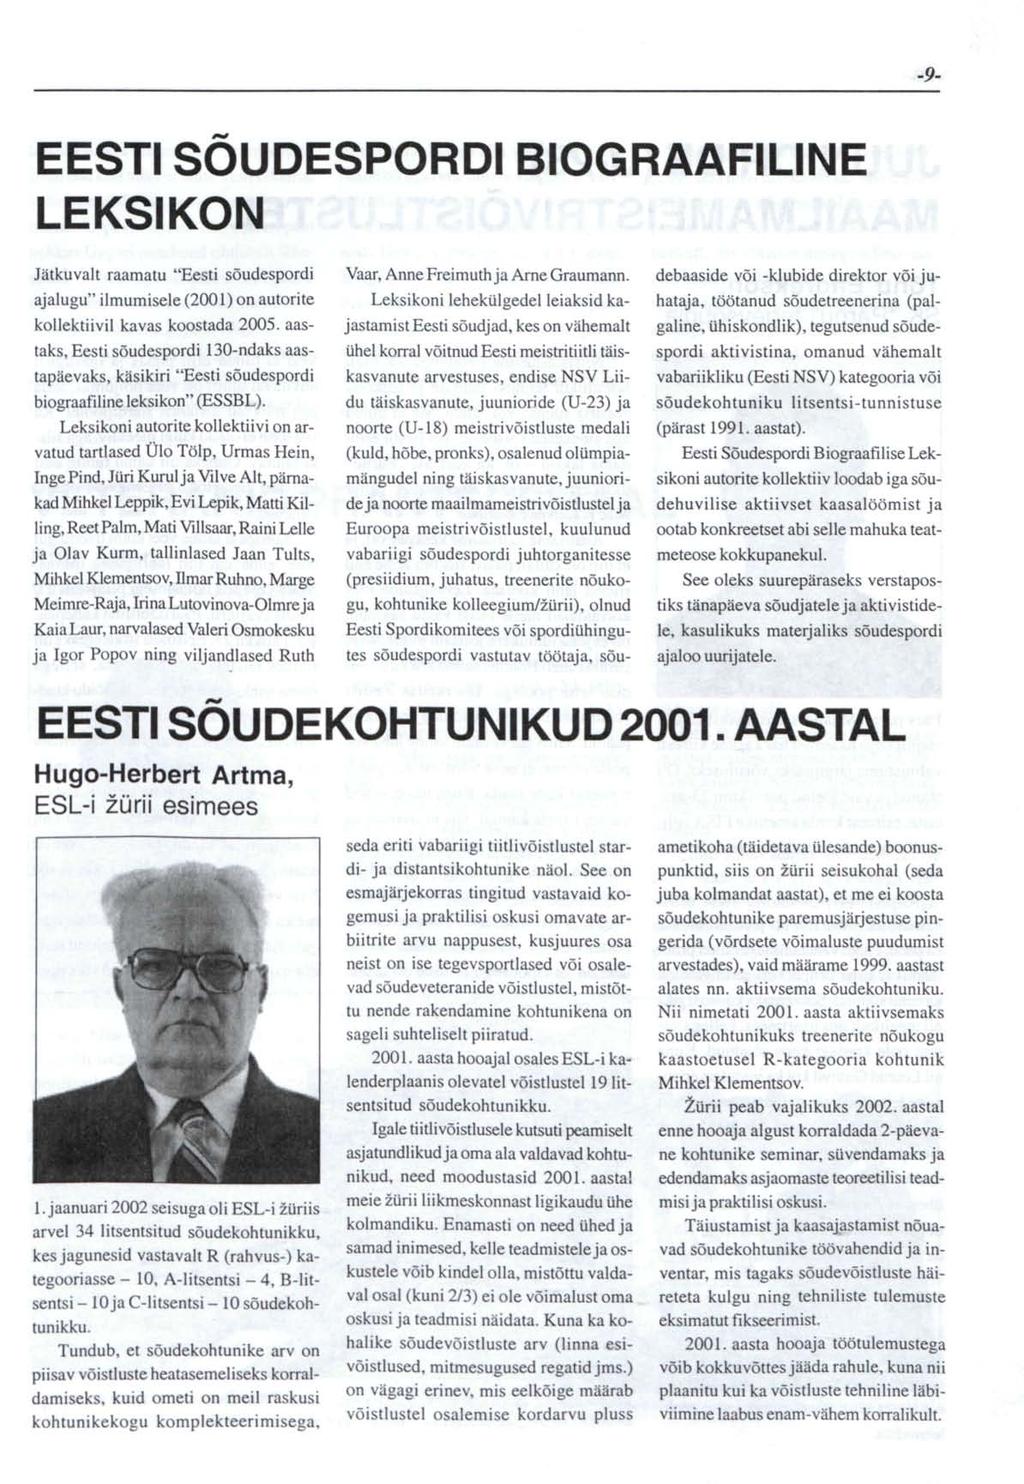 -9- EESTI SOUDESPORDI BIOGRAAFILINE LEKSIKON Jätkuvalt raamatu "Eesti sõudespordi ajalugu" ilmumisele (2001) on autorite kollektiivil kavas koostada 2005.